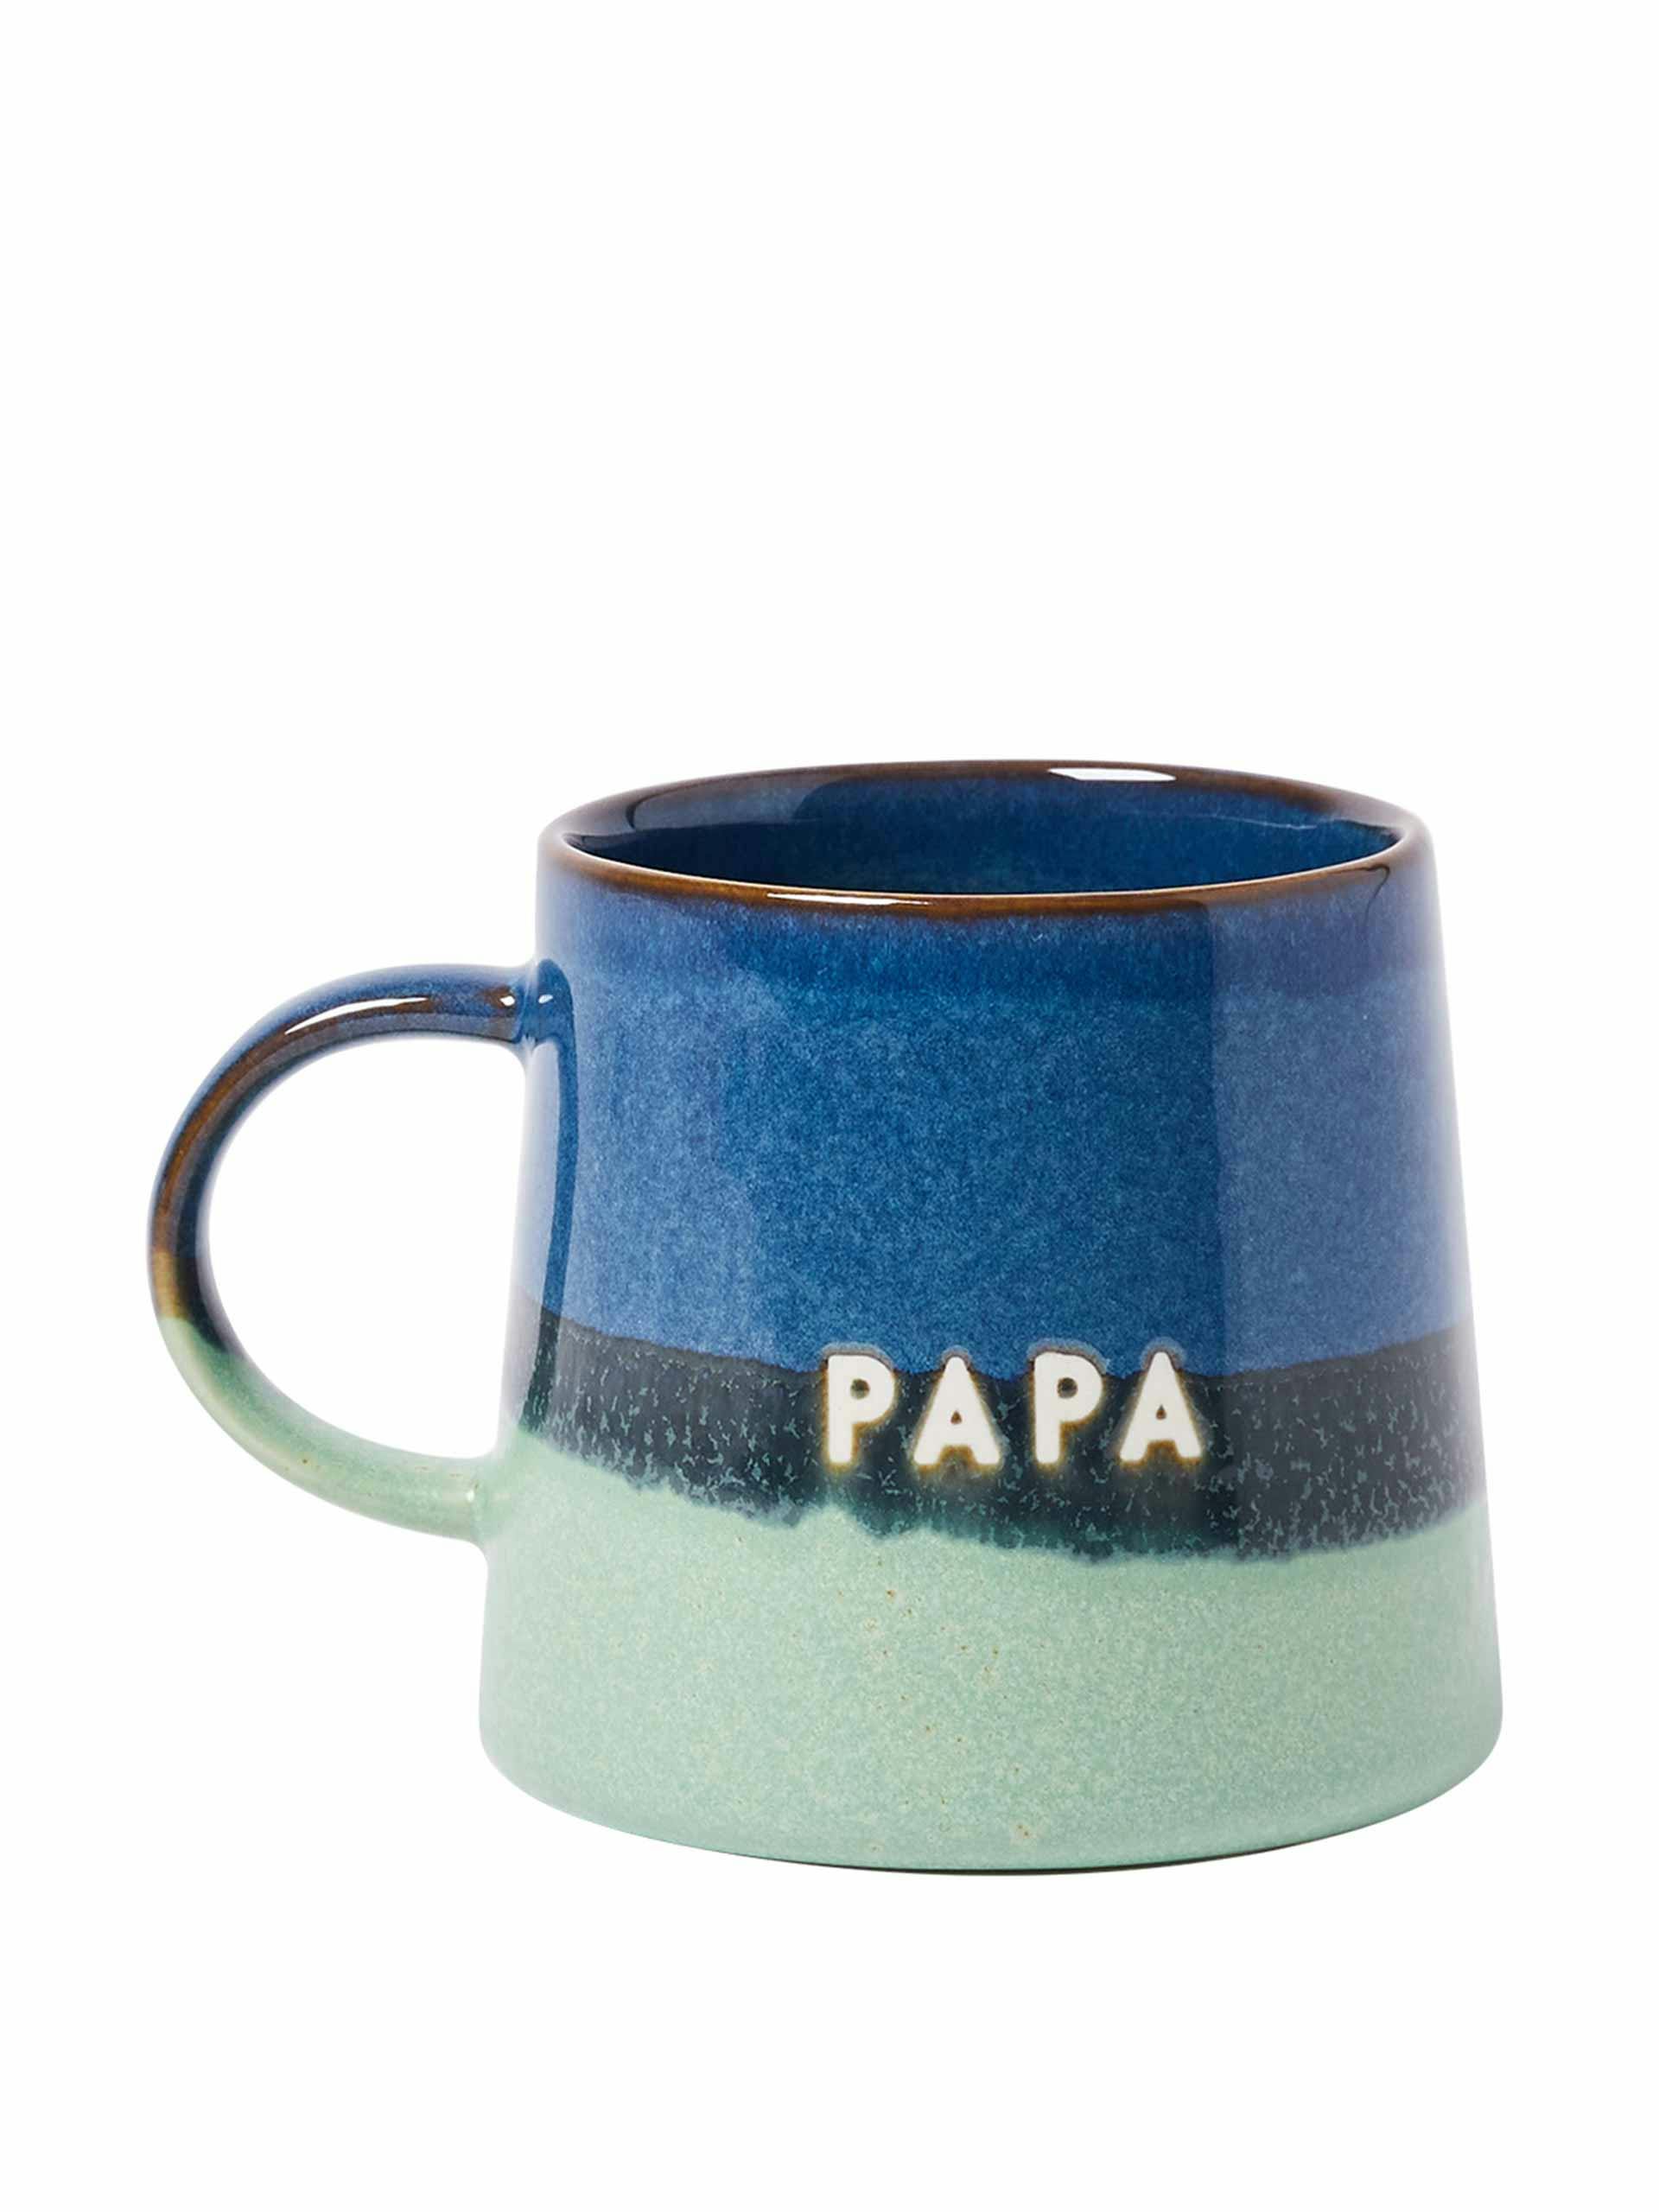 Papa blue ceramic mug